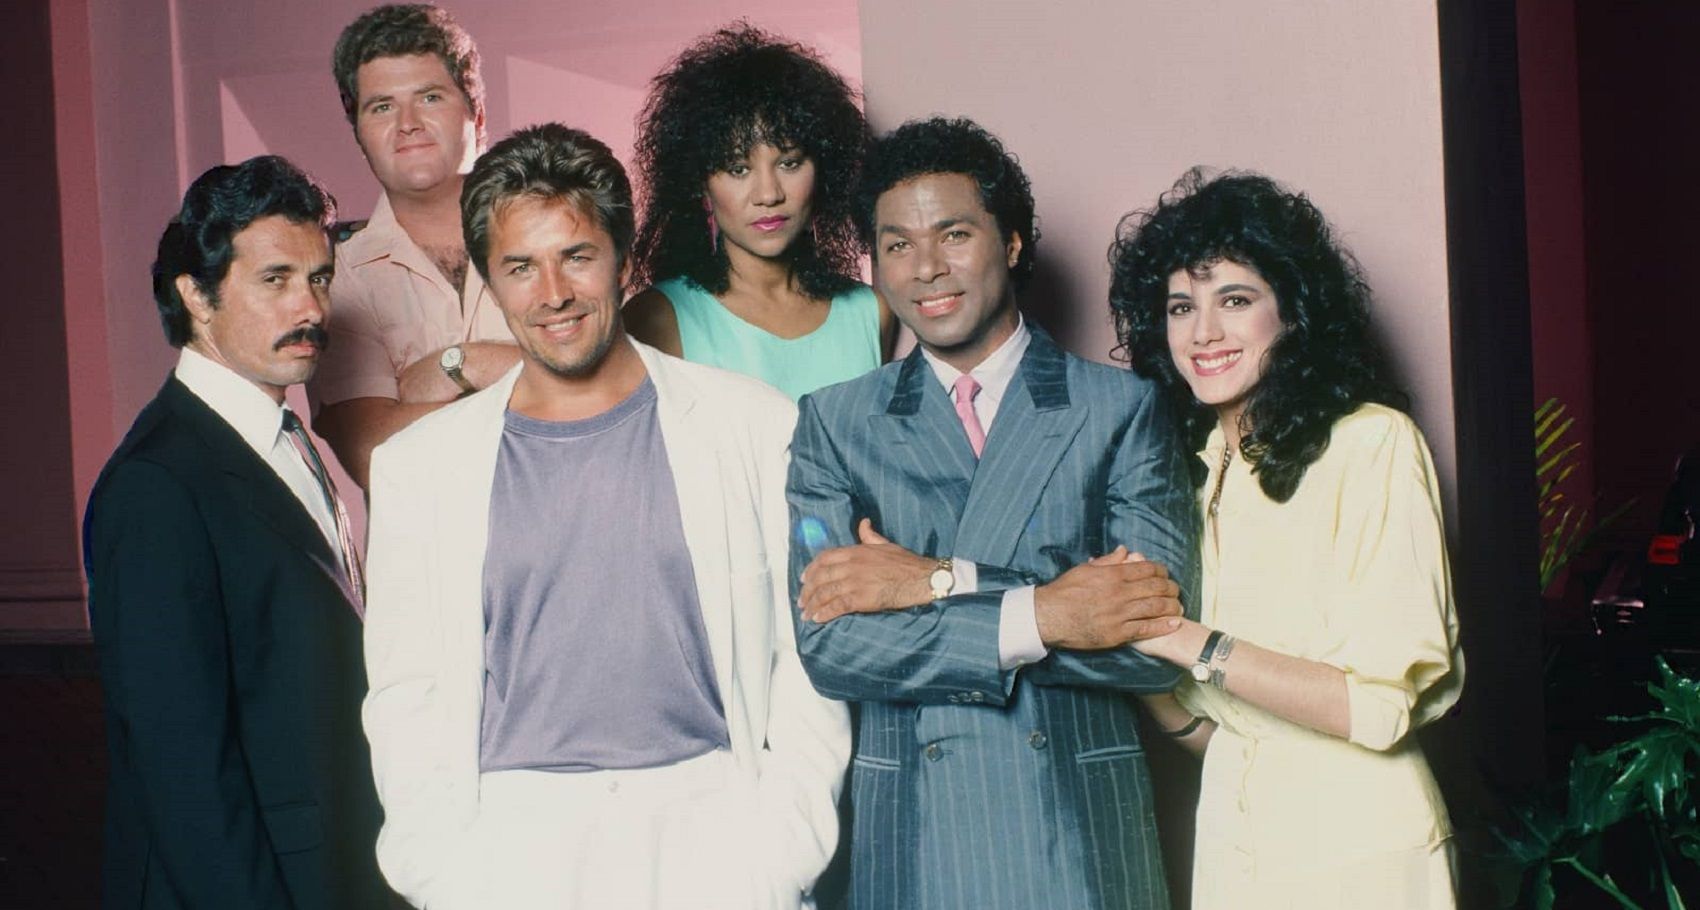 Miami Vice cast photo